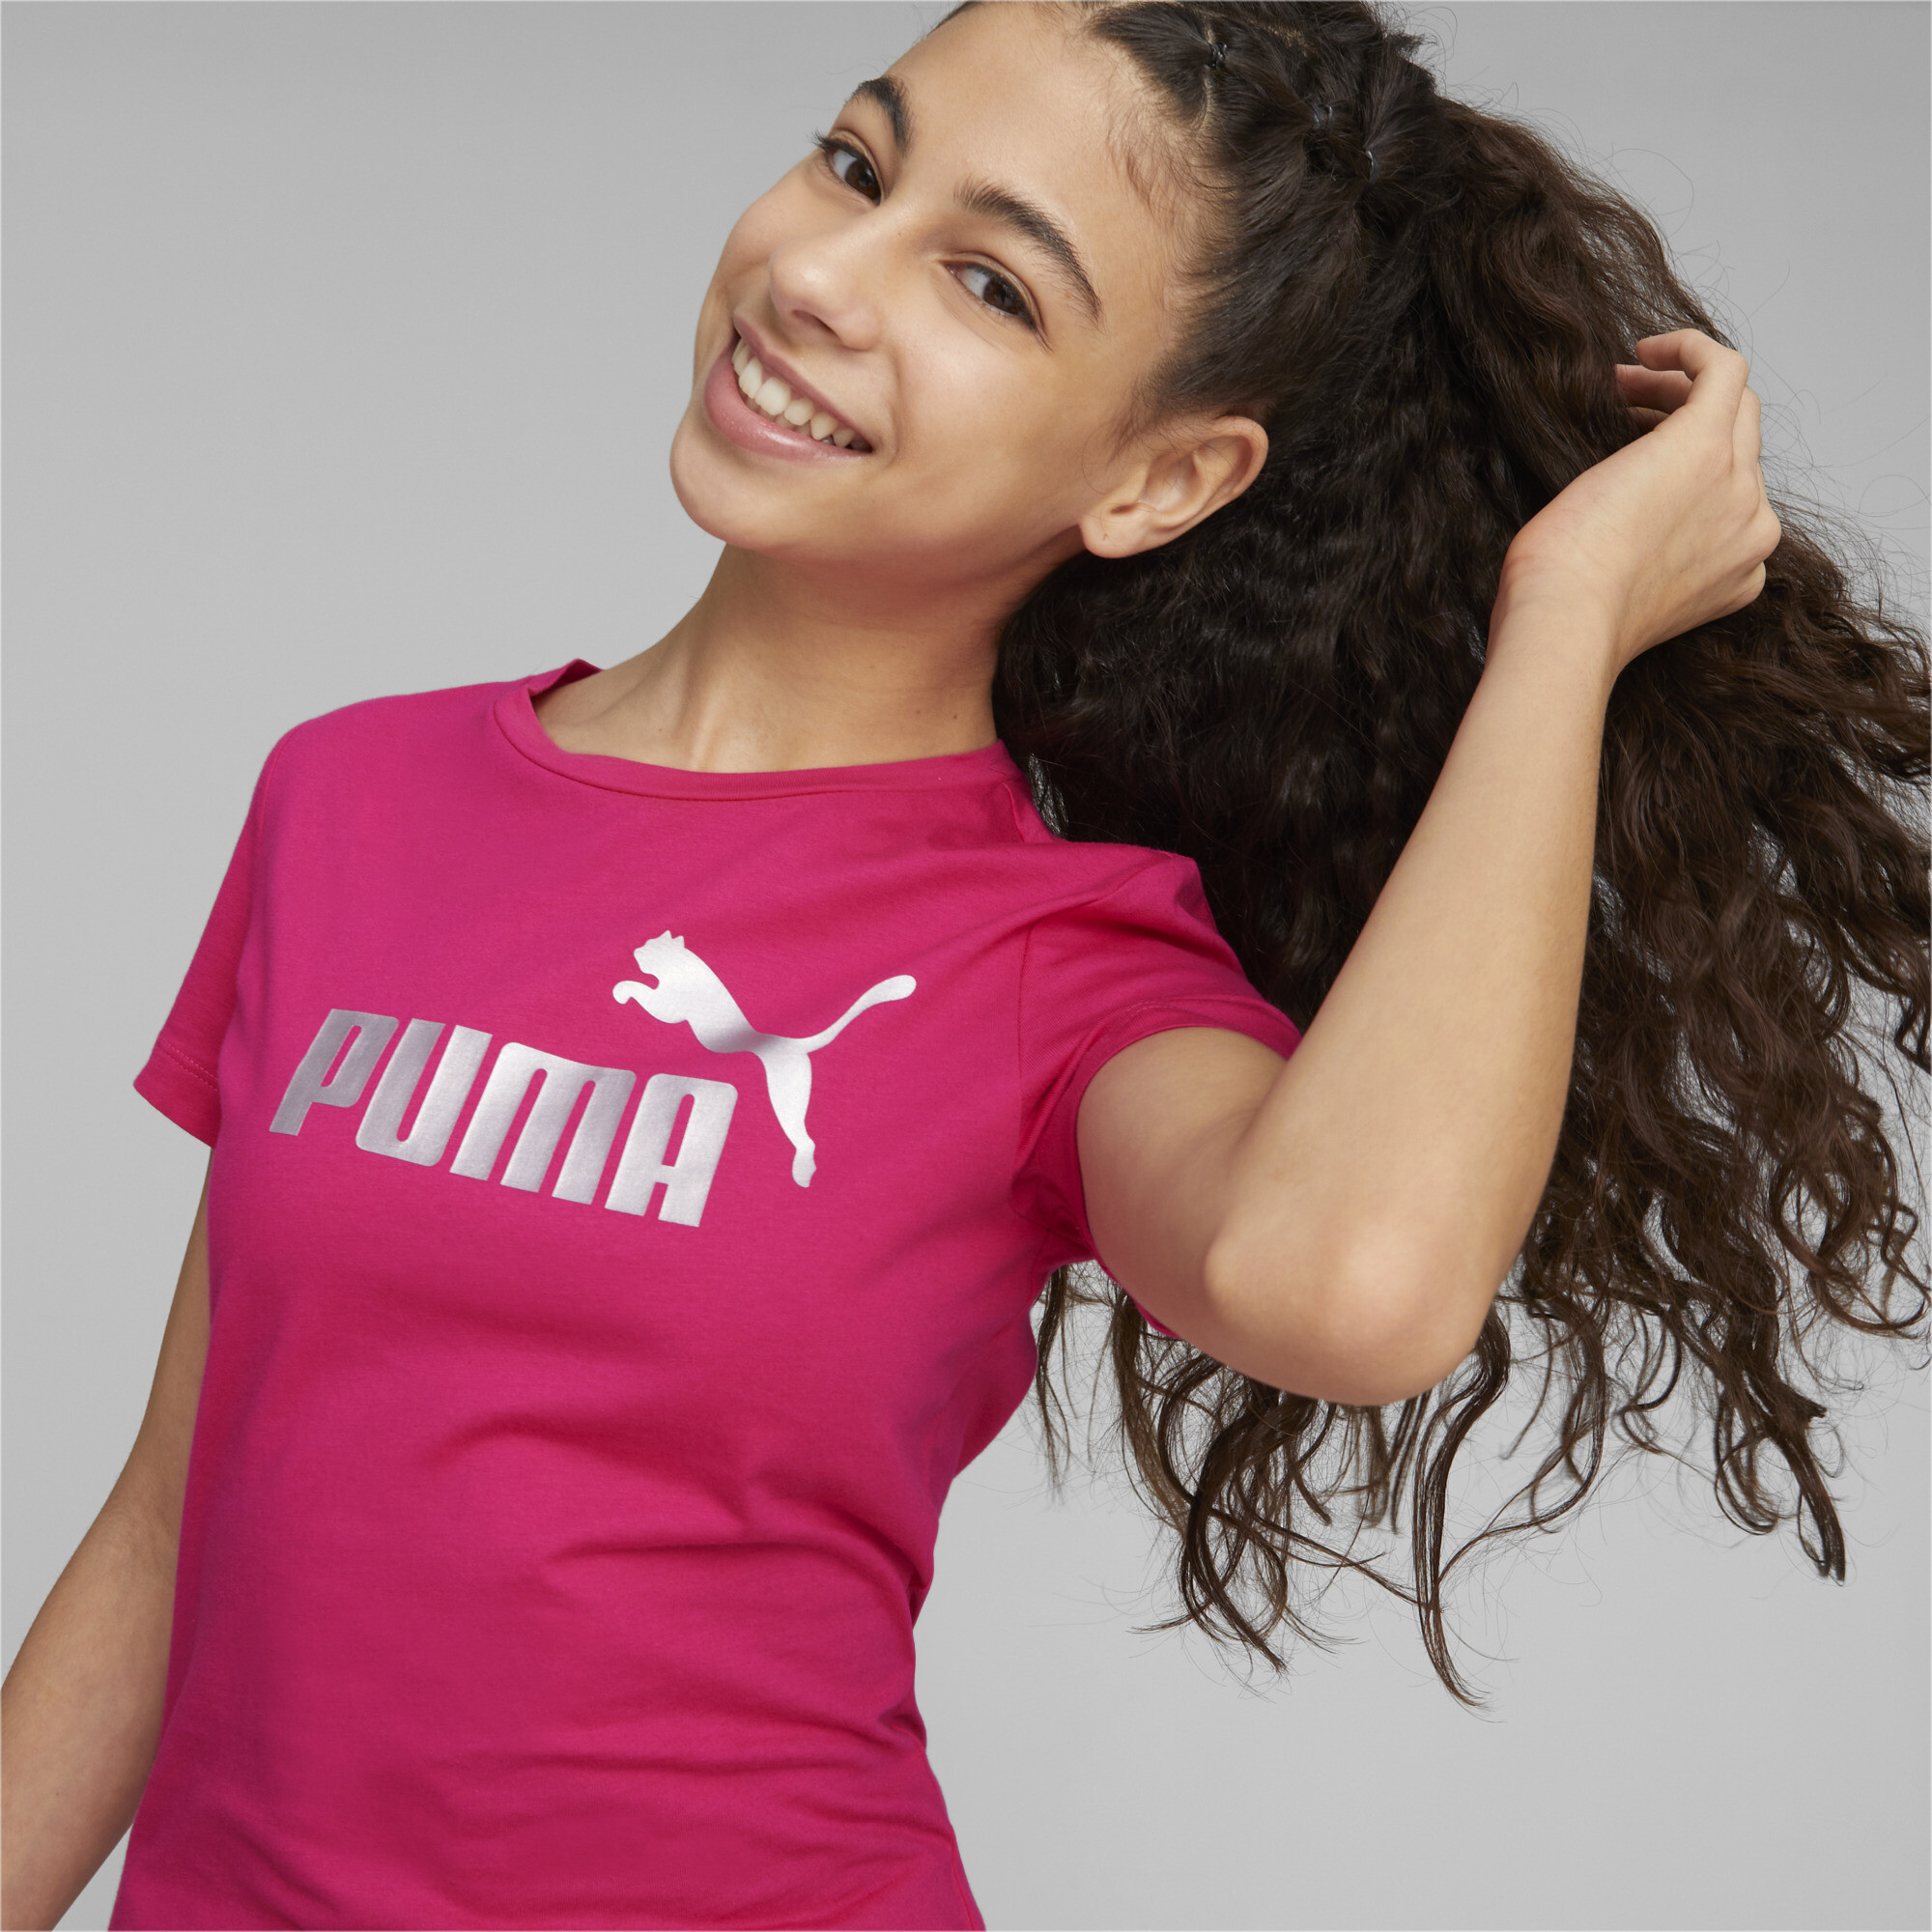 Puma Essentials+ Logo Youth T-Shirt, Pink, Size 3-4Y, Age